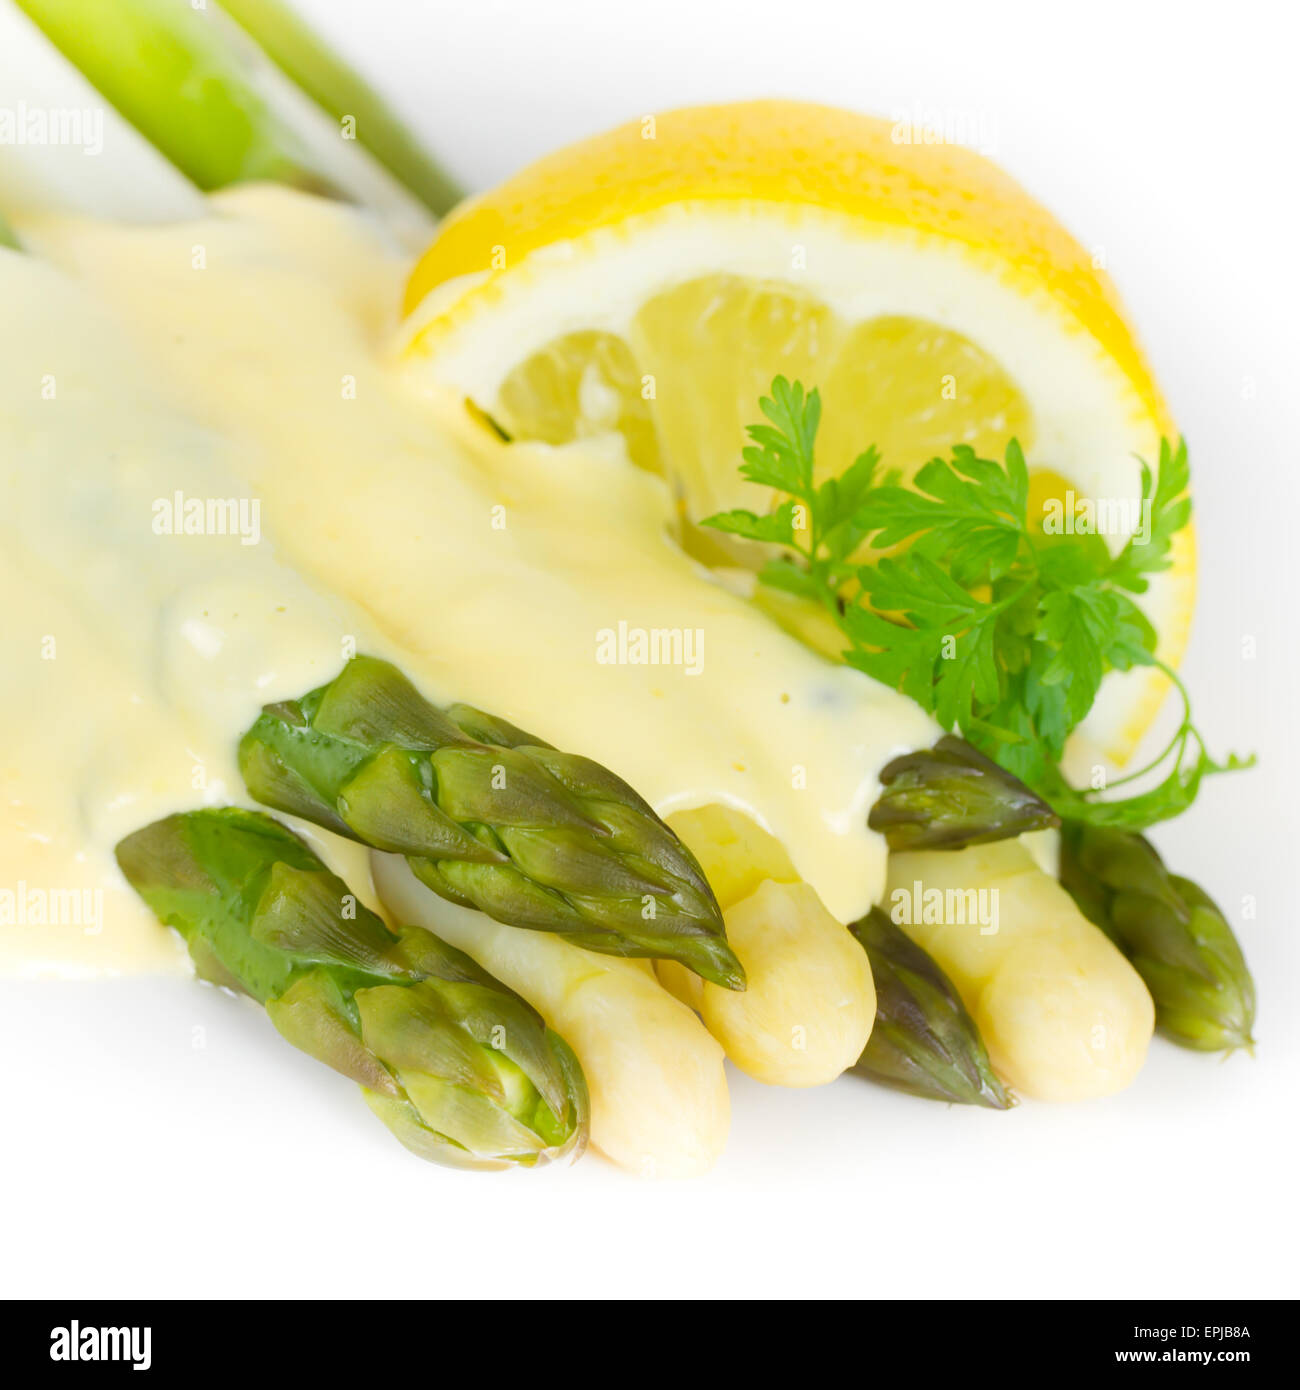 asparagus Stock Photo